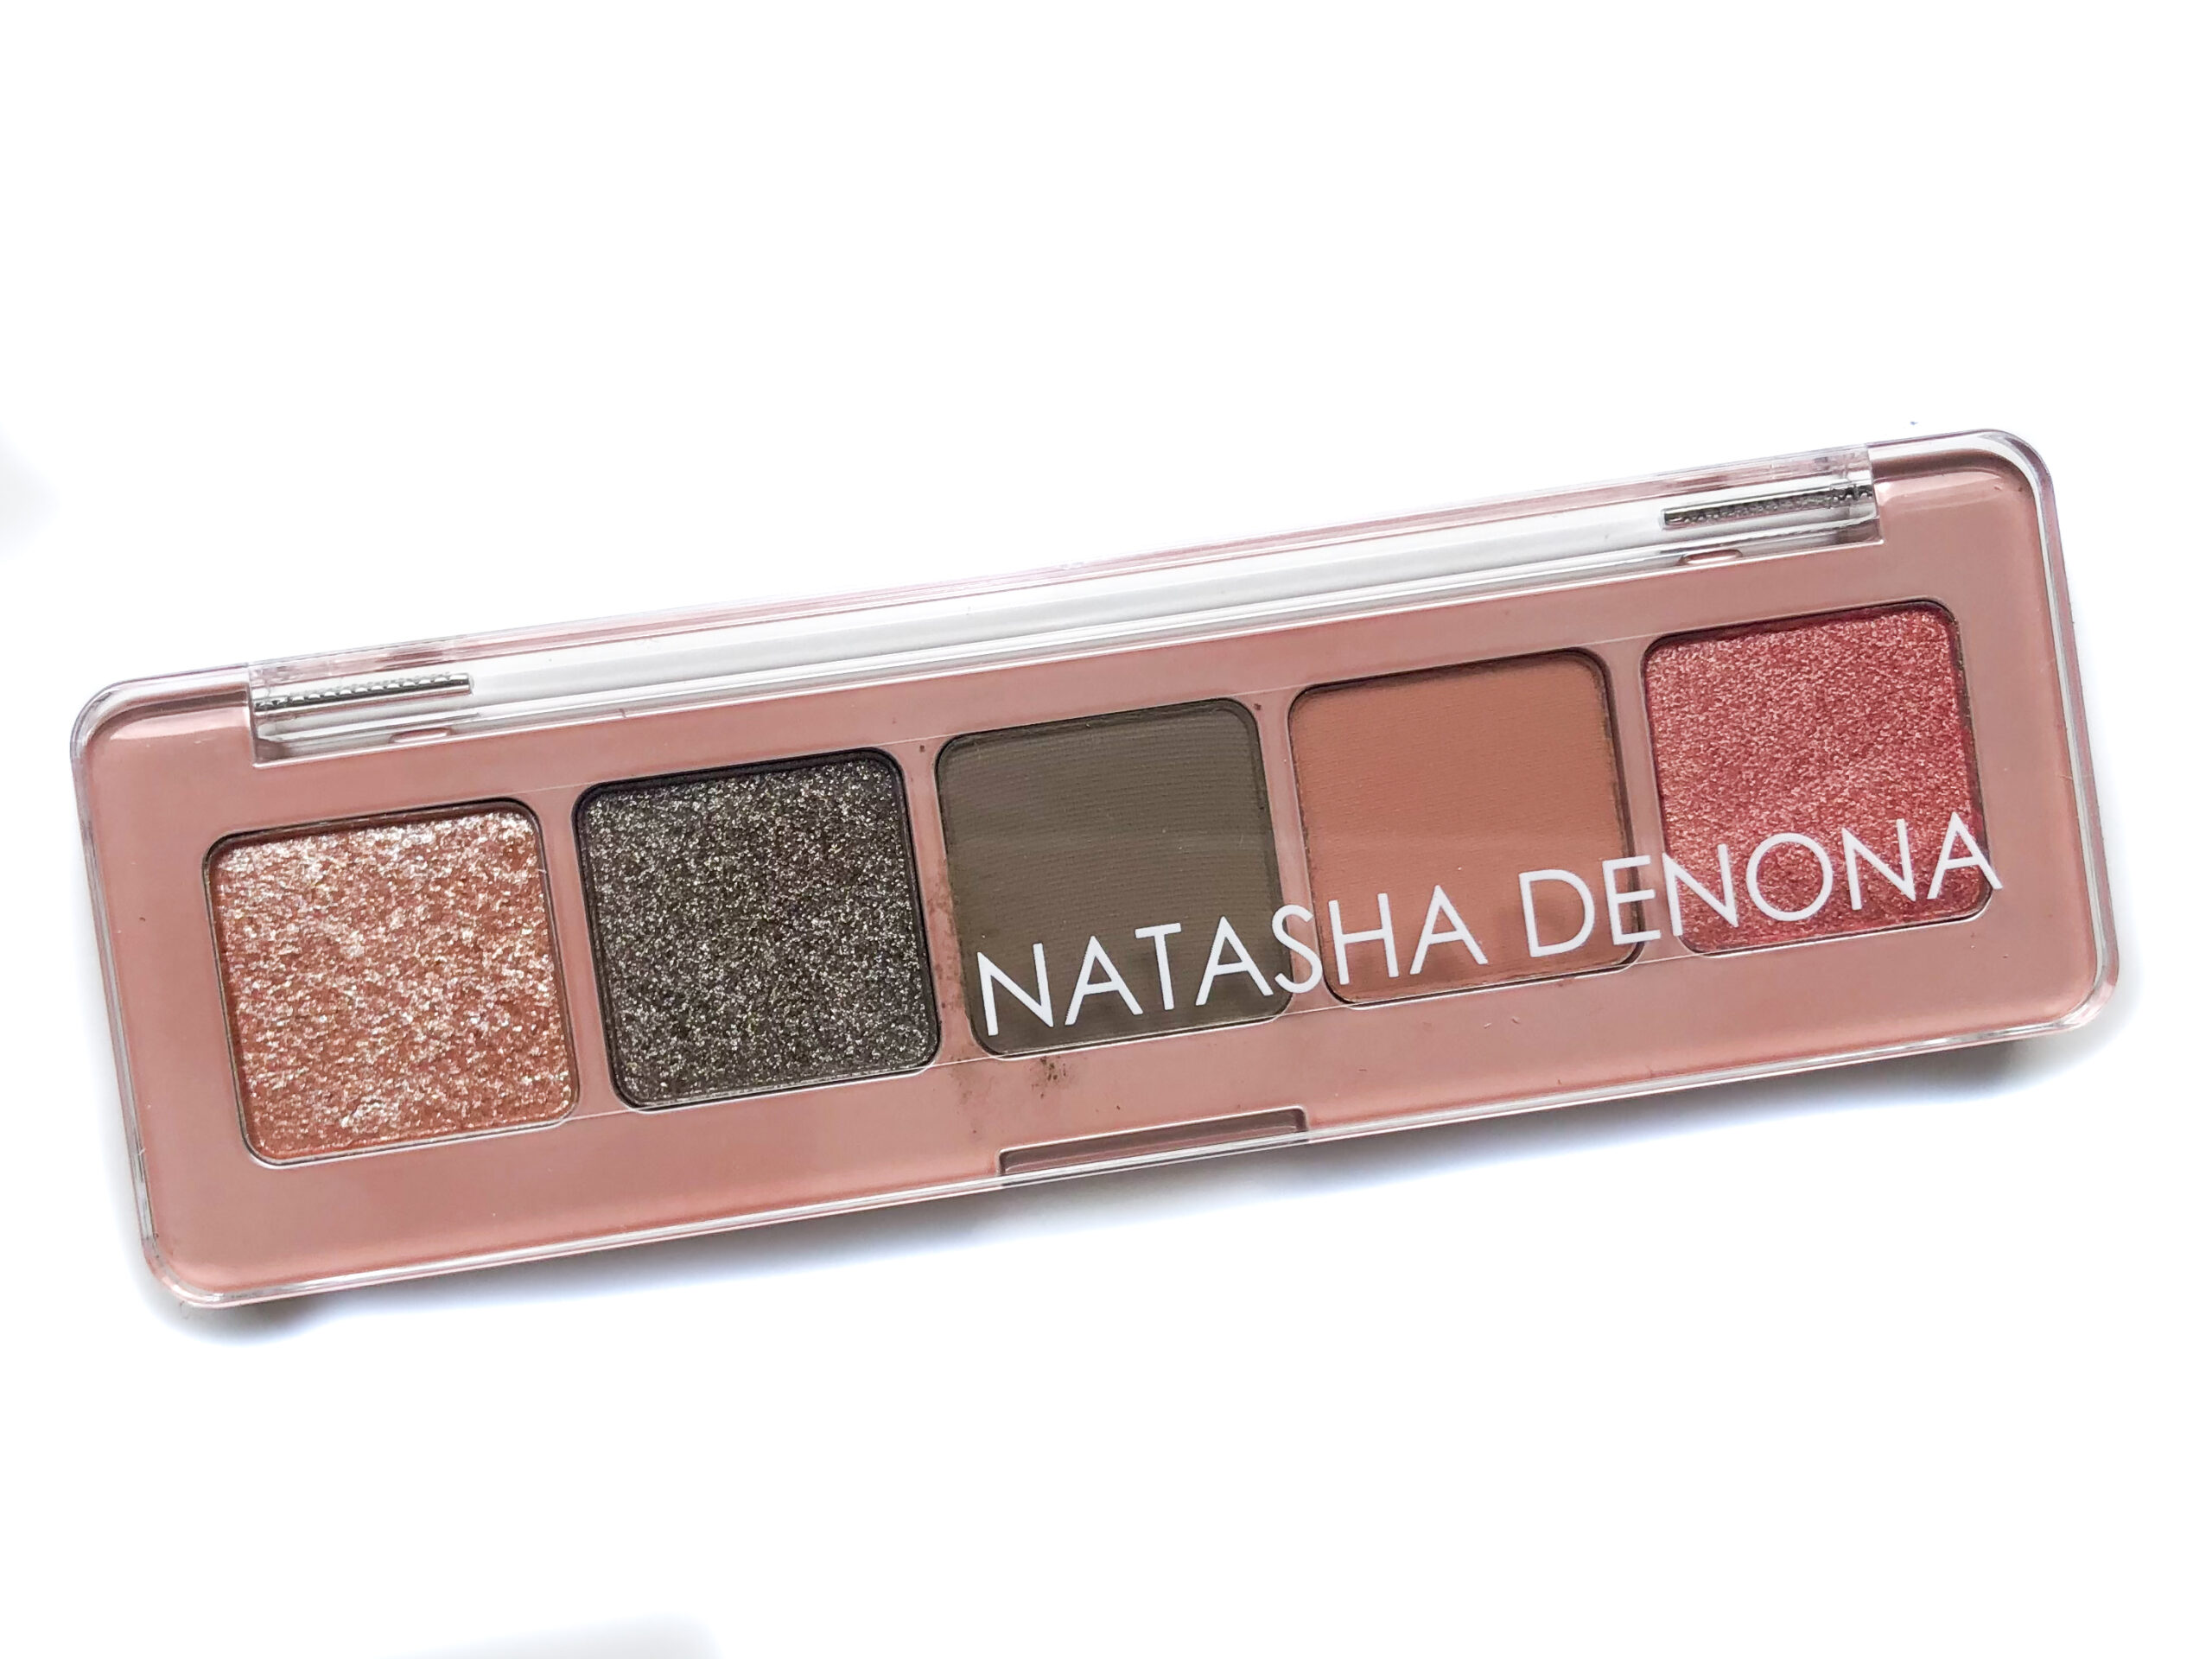 Natasha Denona Mini Retro Eyeshadow Palette | Review - Blushy Darling